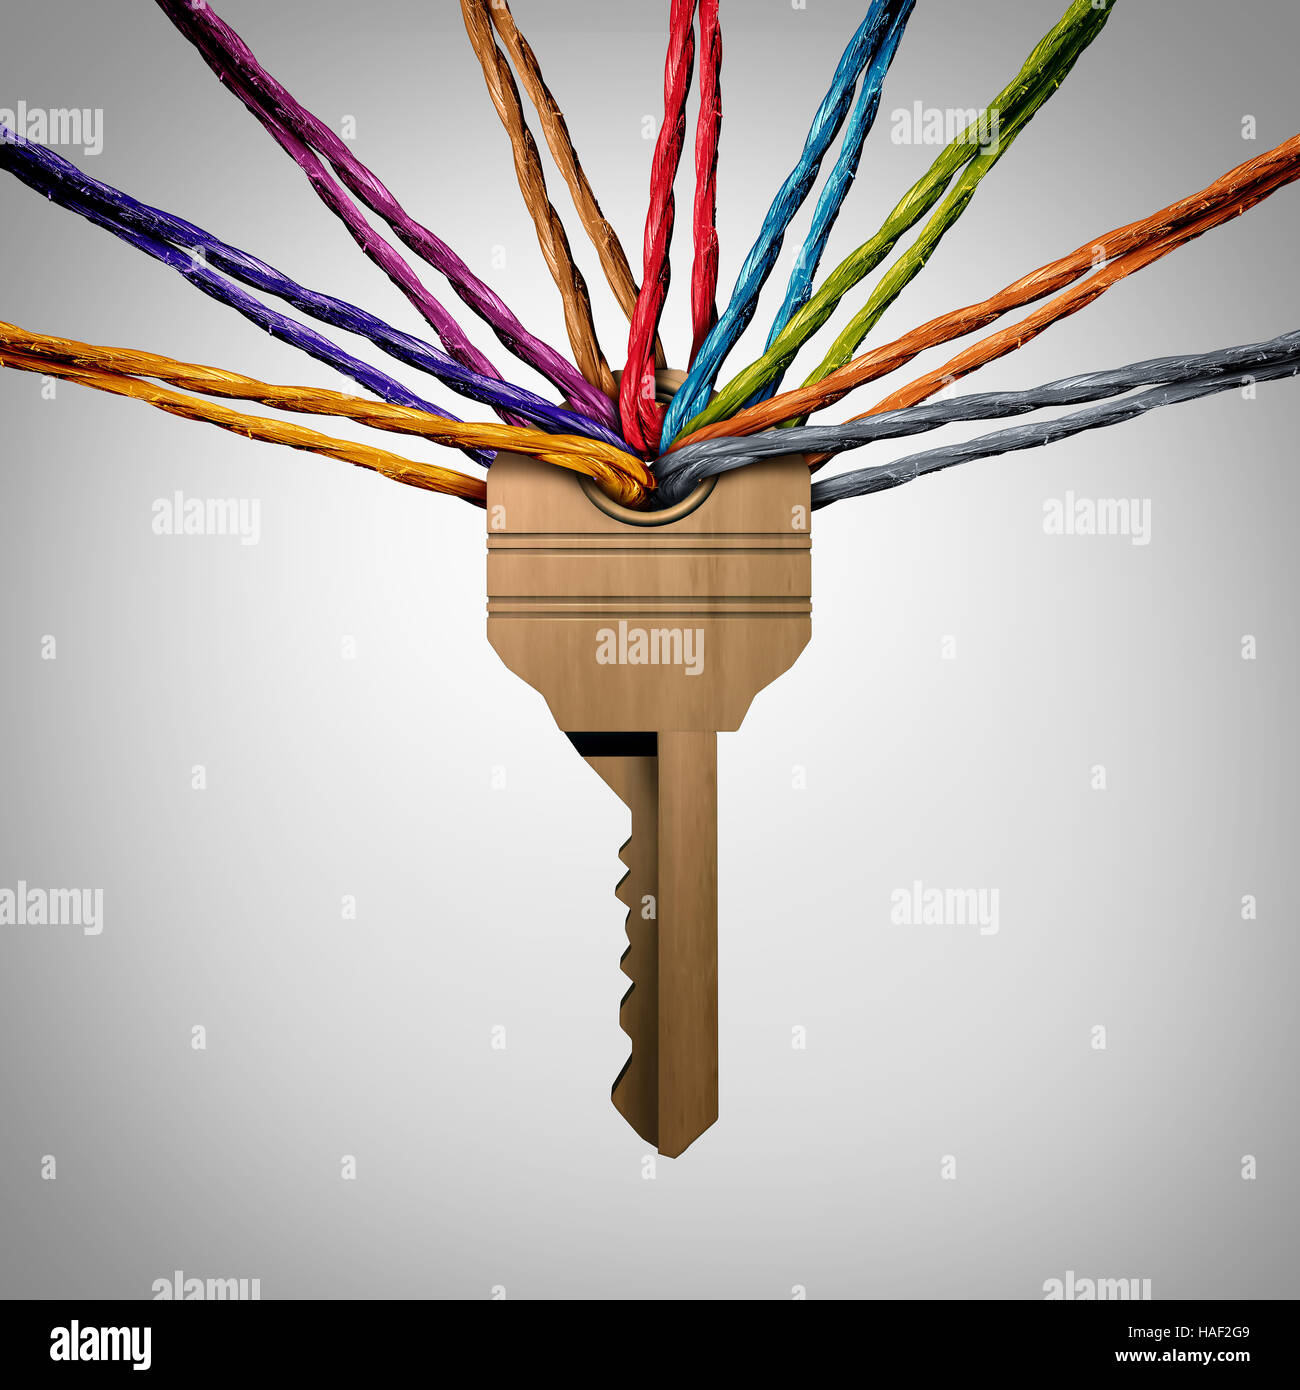 Community Schlüssel oder Netzwerk-Kennwort-Konzept als eine Gruppe von Viverse Seile verbunden zu einem Sicherheitssymbol als Sozialschutz Metapher für Teamerfolg Stockfoto